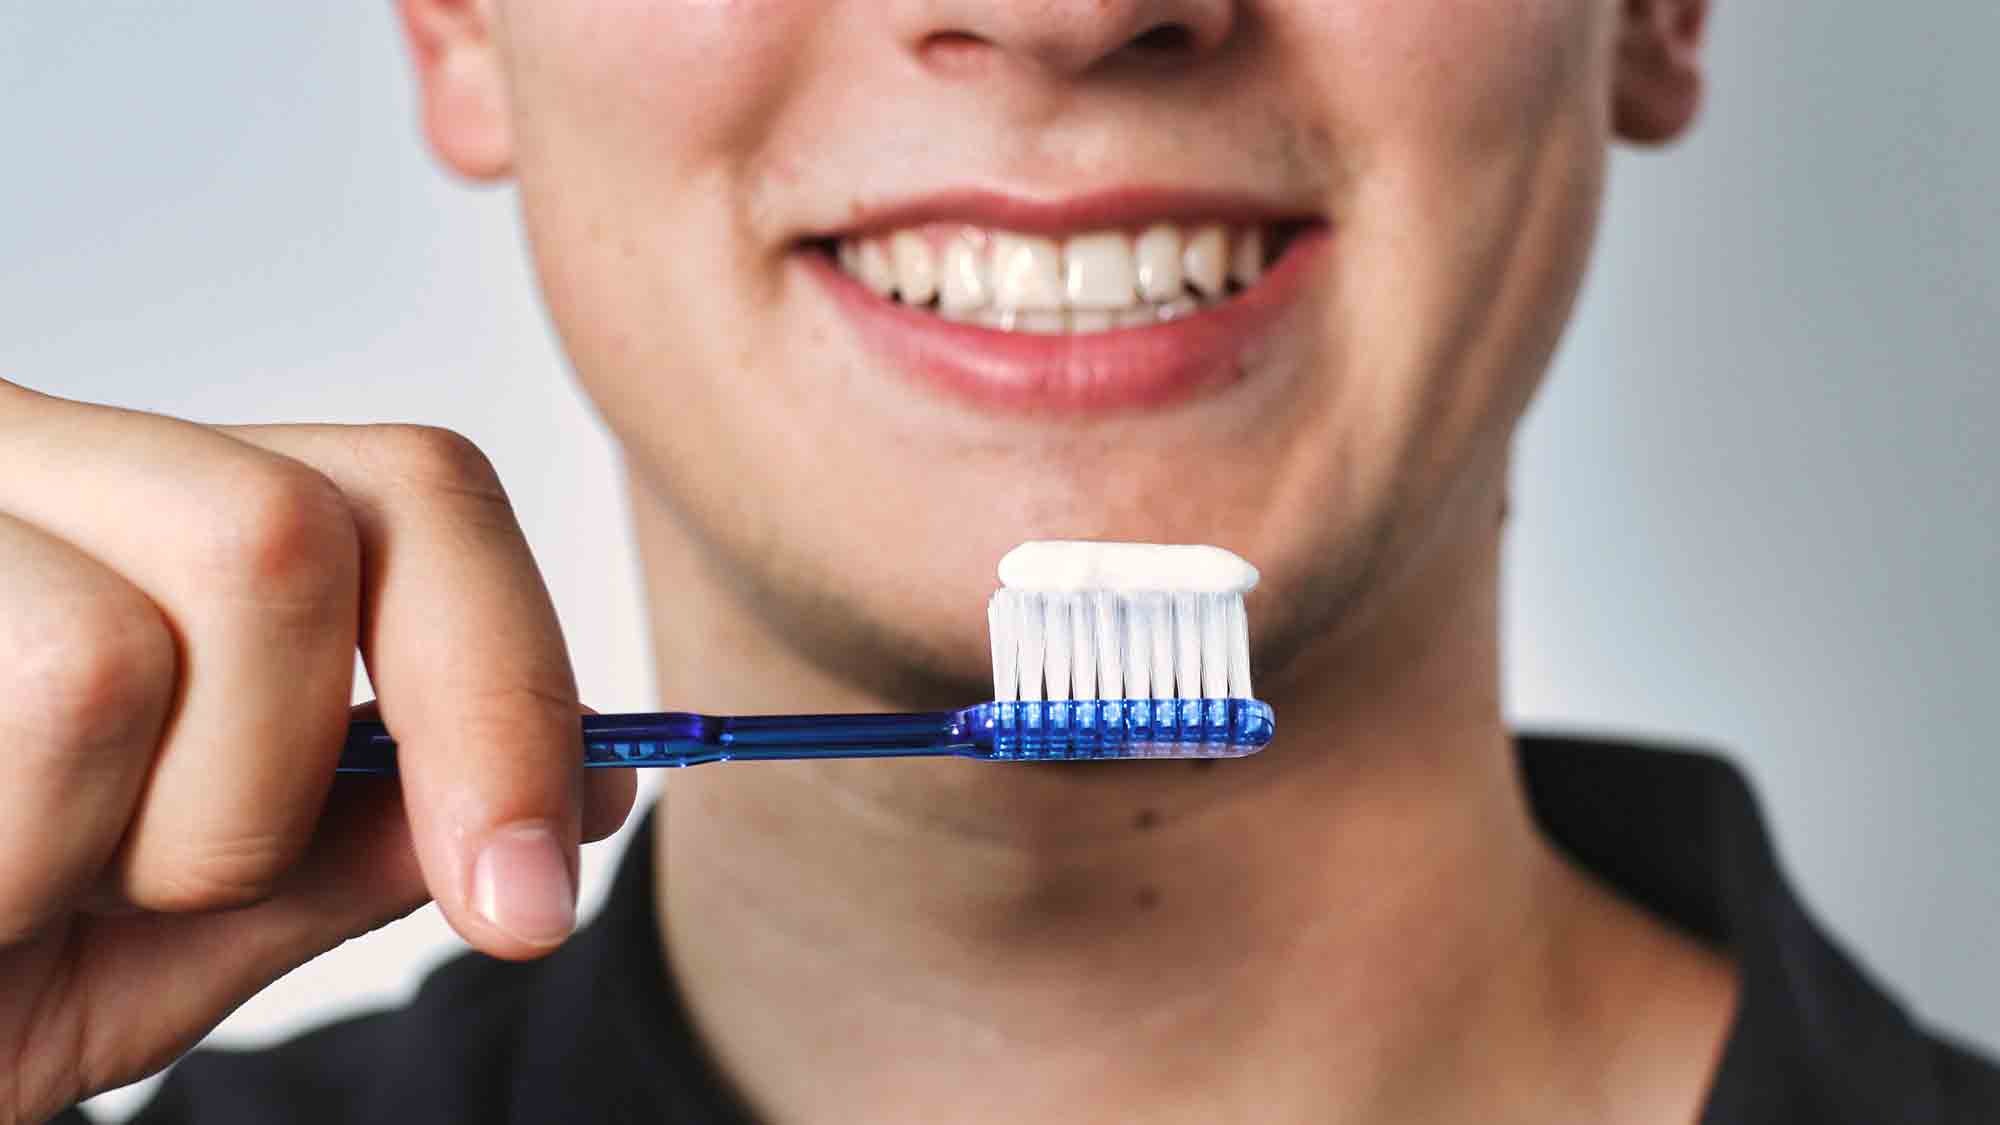 Dr. Wolff Group, wirksam und sicher: Zahnpasta mit Hydroxylapatit für alle, Tag der Zahngesundheit